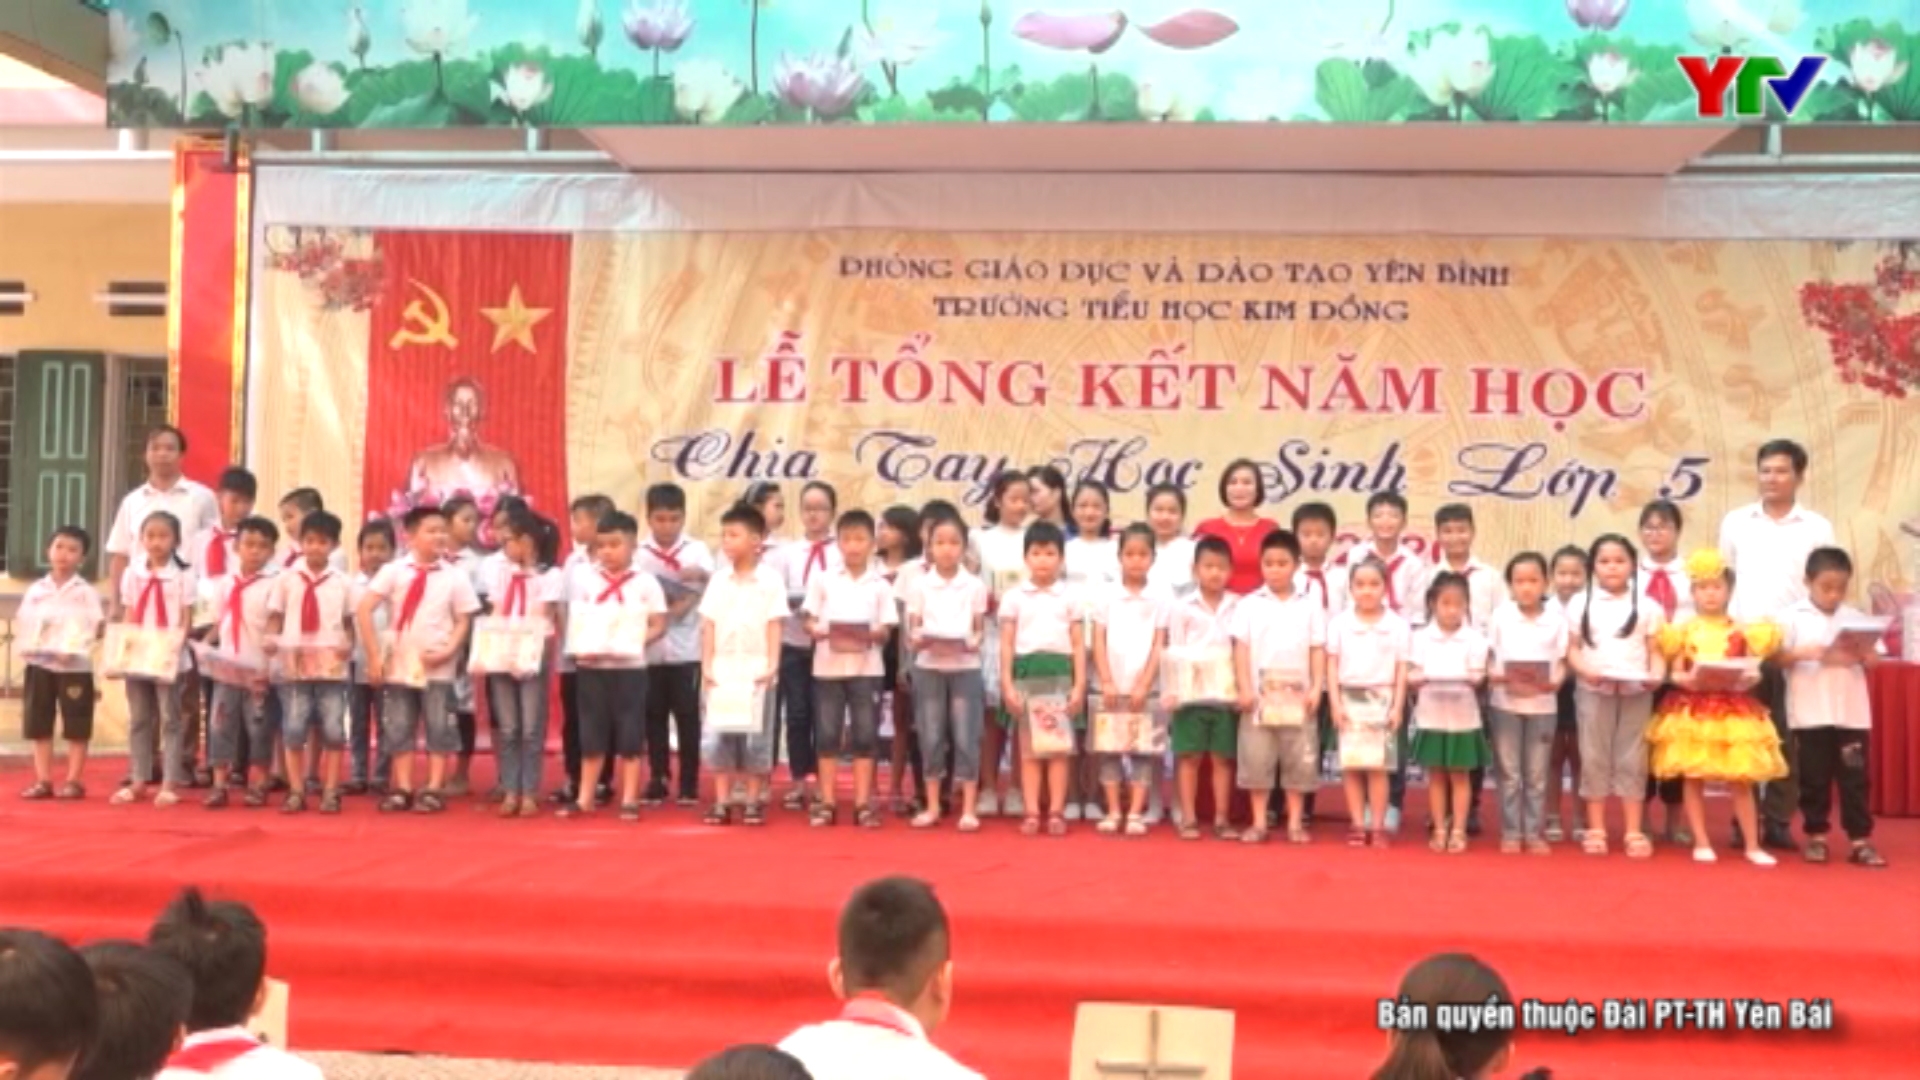 Trường Tiểu học Kim Đồng huyện Yên Bình tổng kết năm học 2019 - 2020